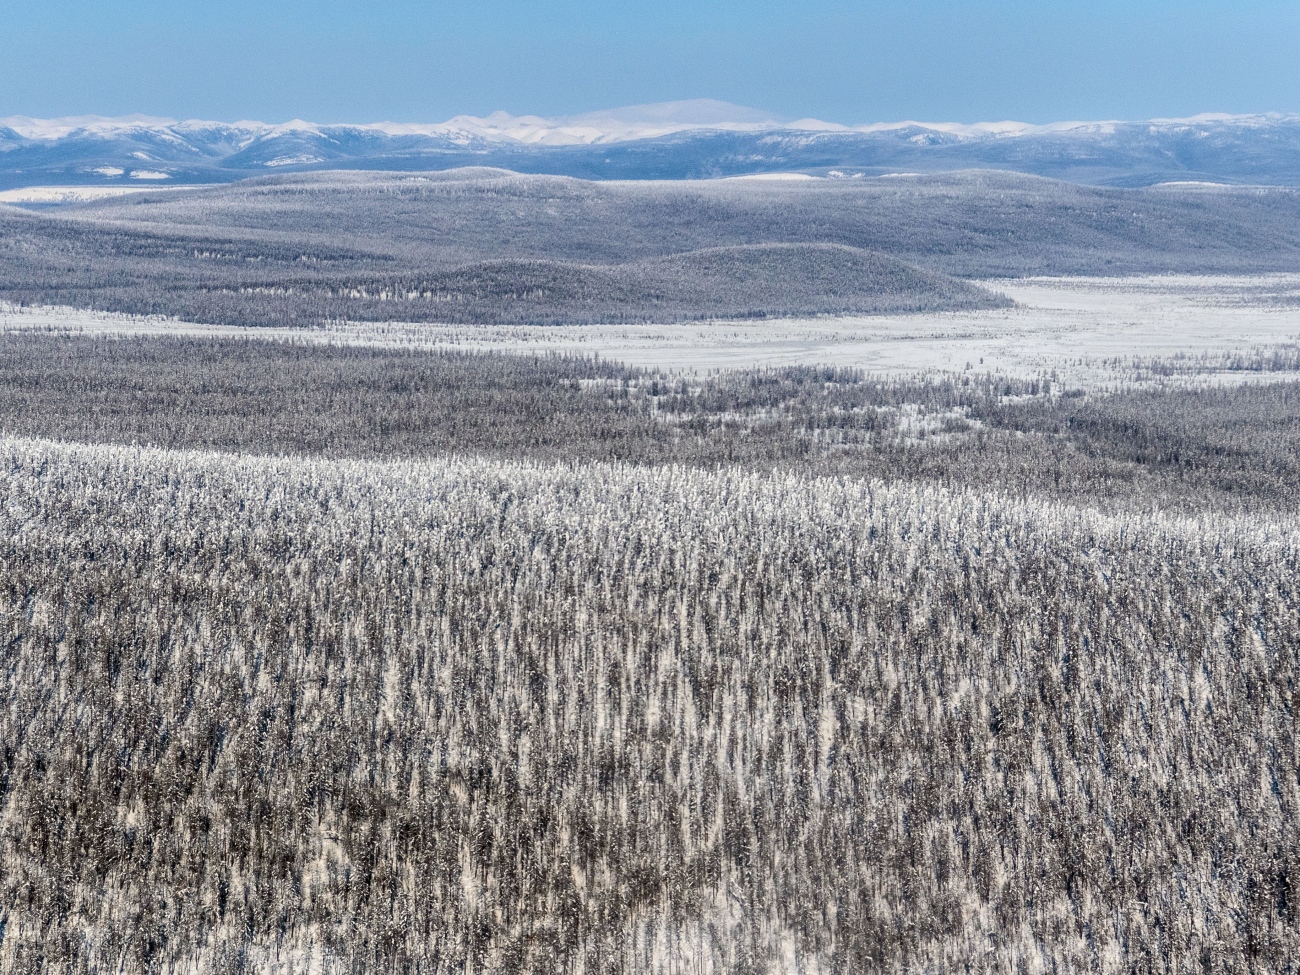 Yakutia landscape in winter